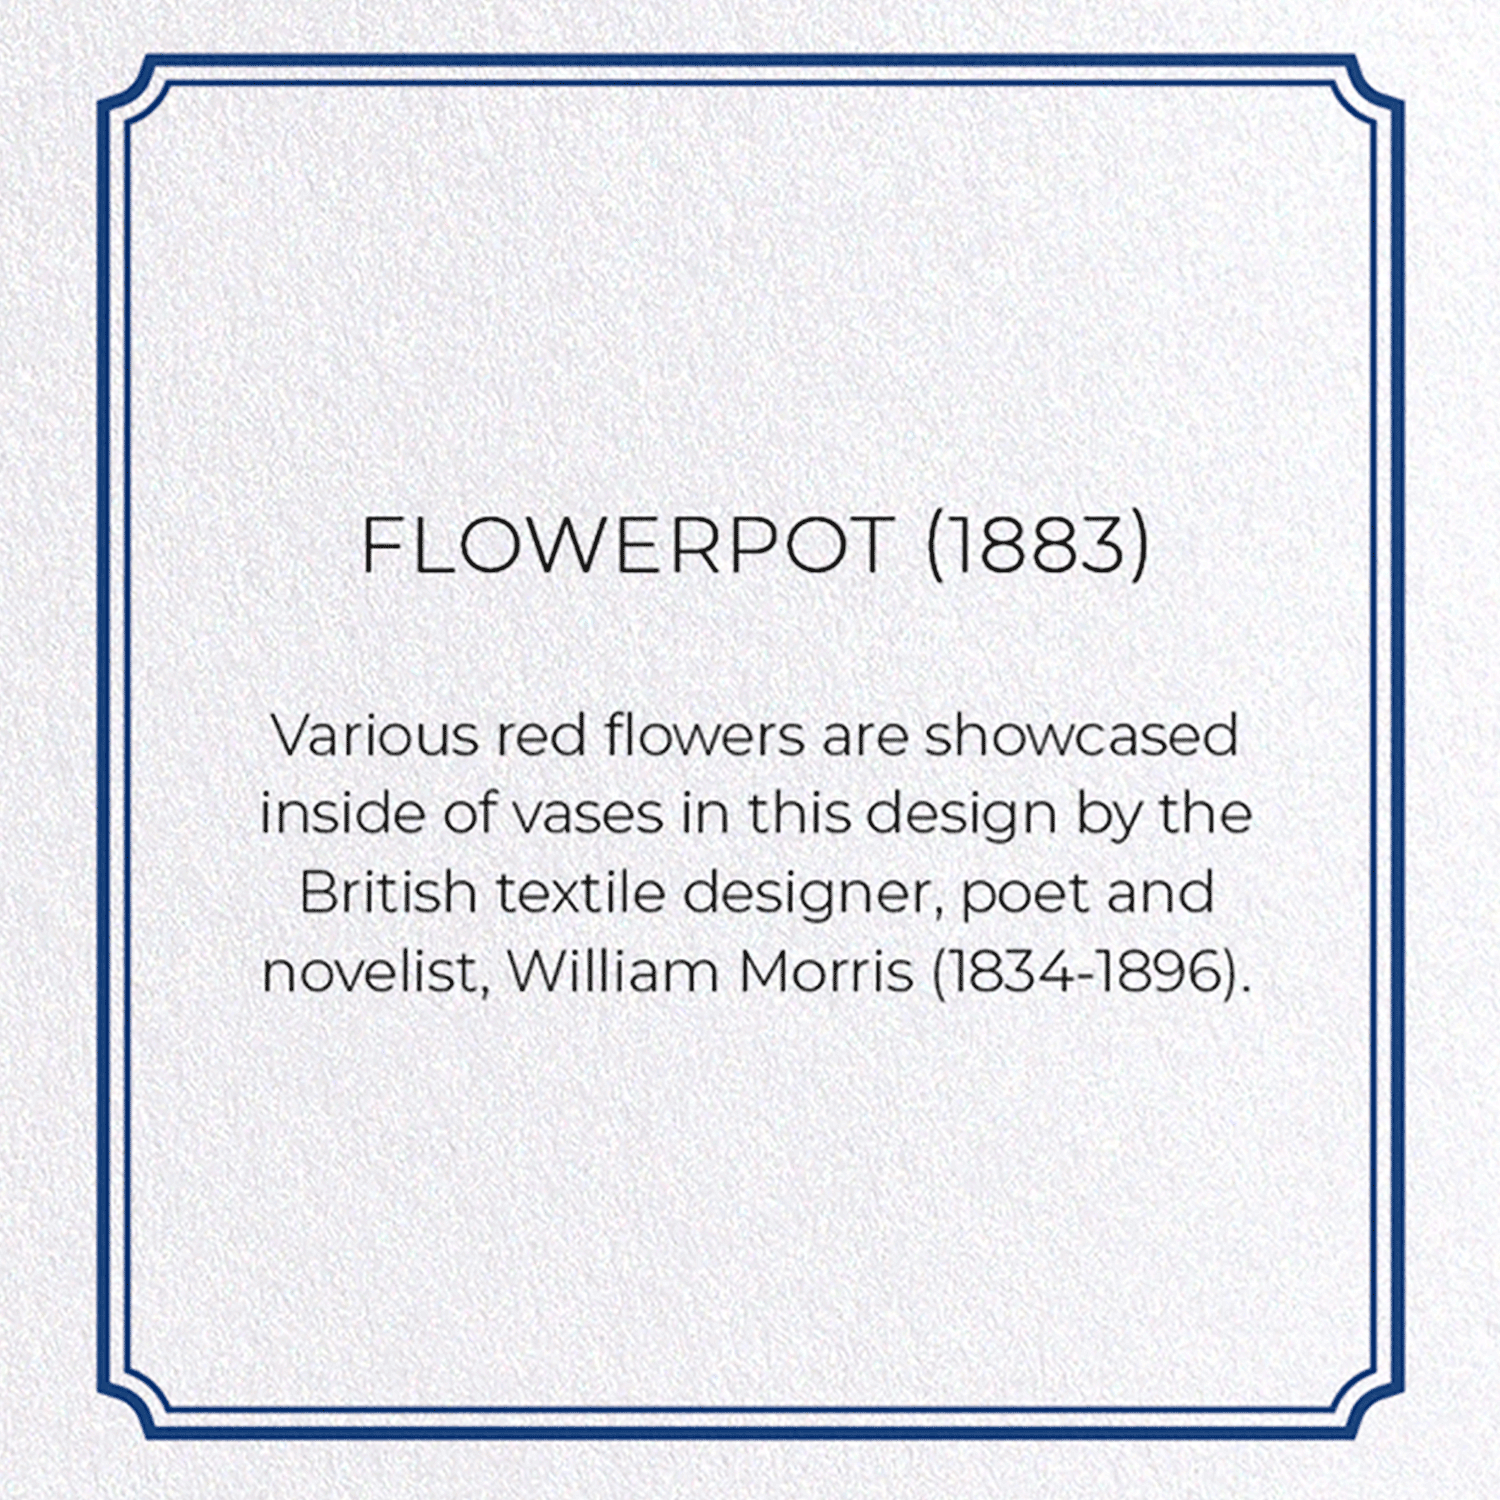 FLOWERPOT (1883)